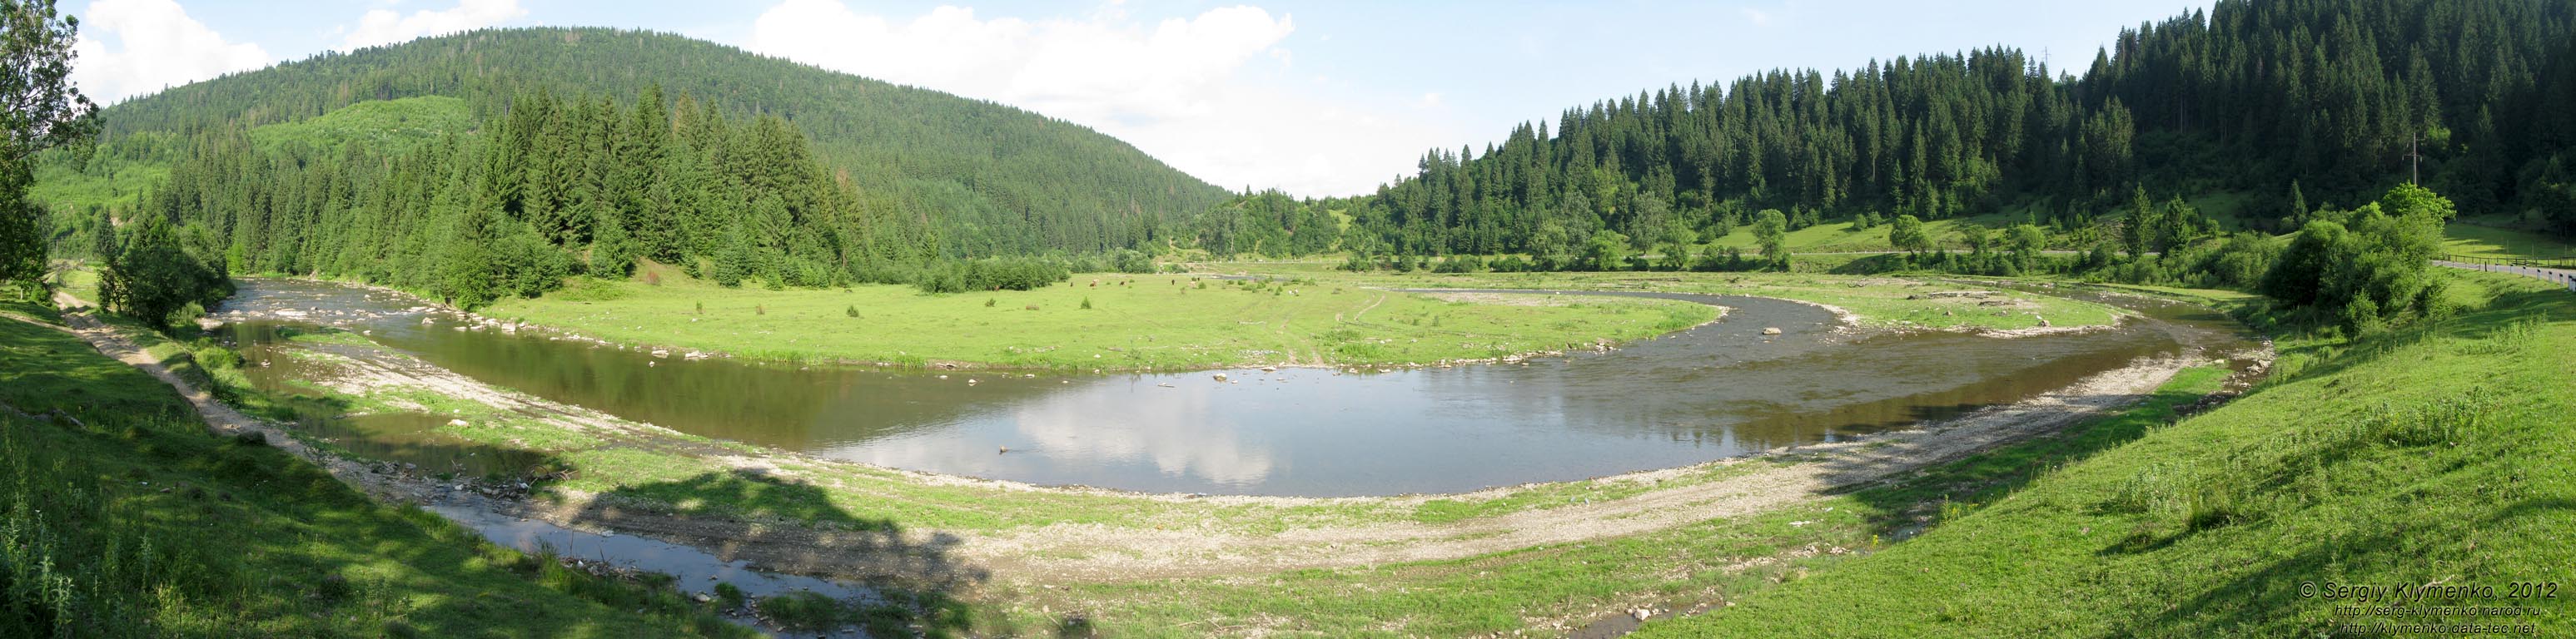 Закарпатская область. Фото. Река Рика на участке между селами Нижний Быстрый и Противень.